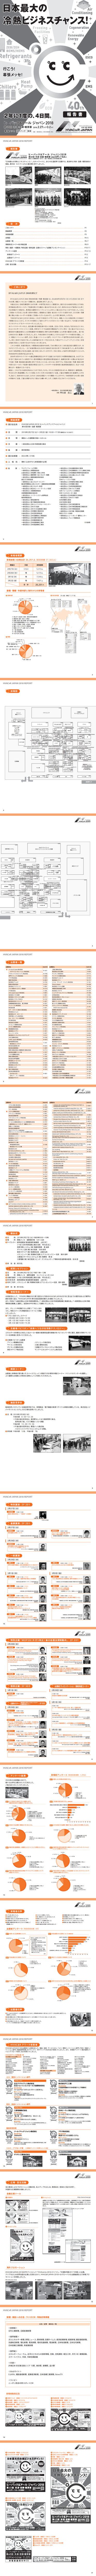 日本暖通制冷展览会hvac R Japan时间 地点 门票 行程 去展网